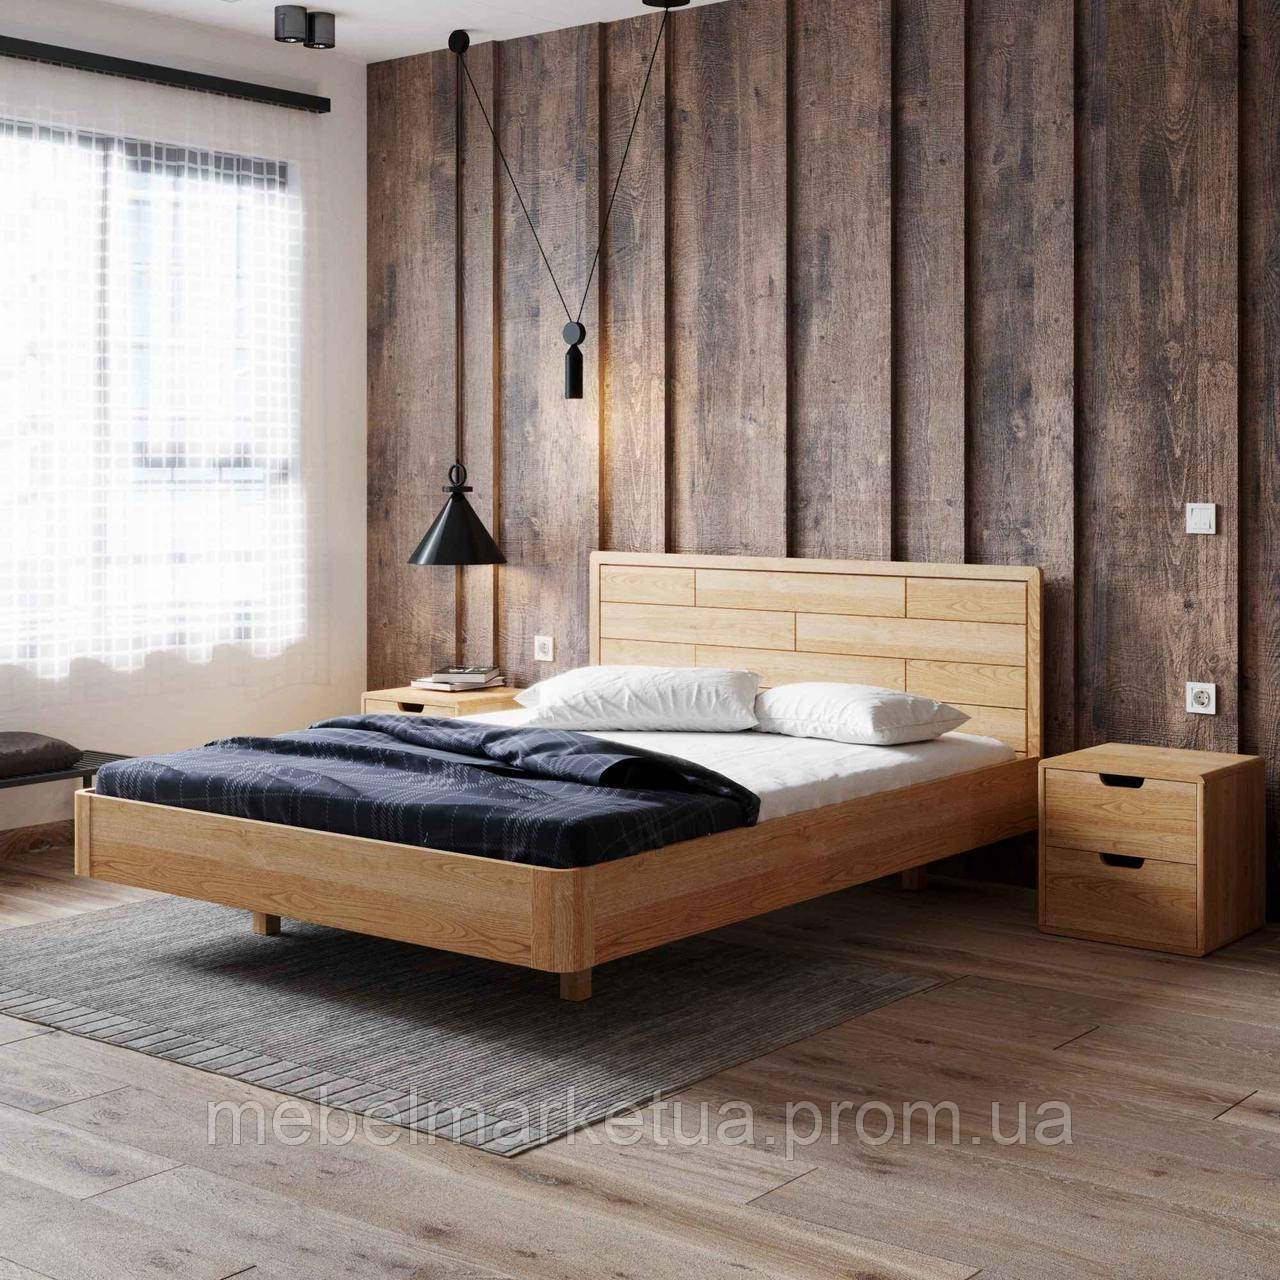 Дерев’яне ліжко Лауро з масиву Вільхи